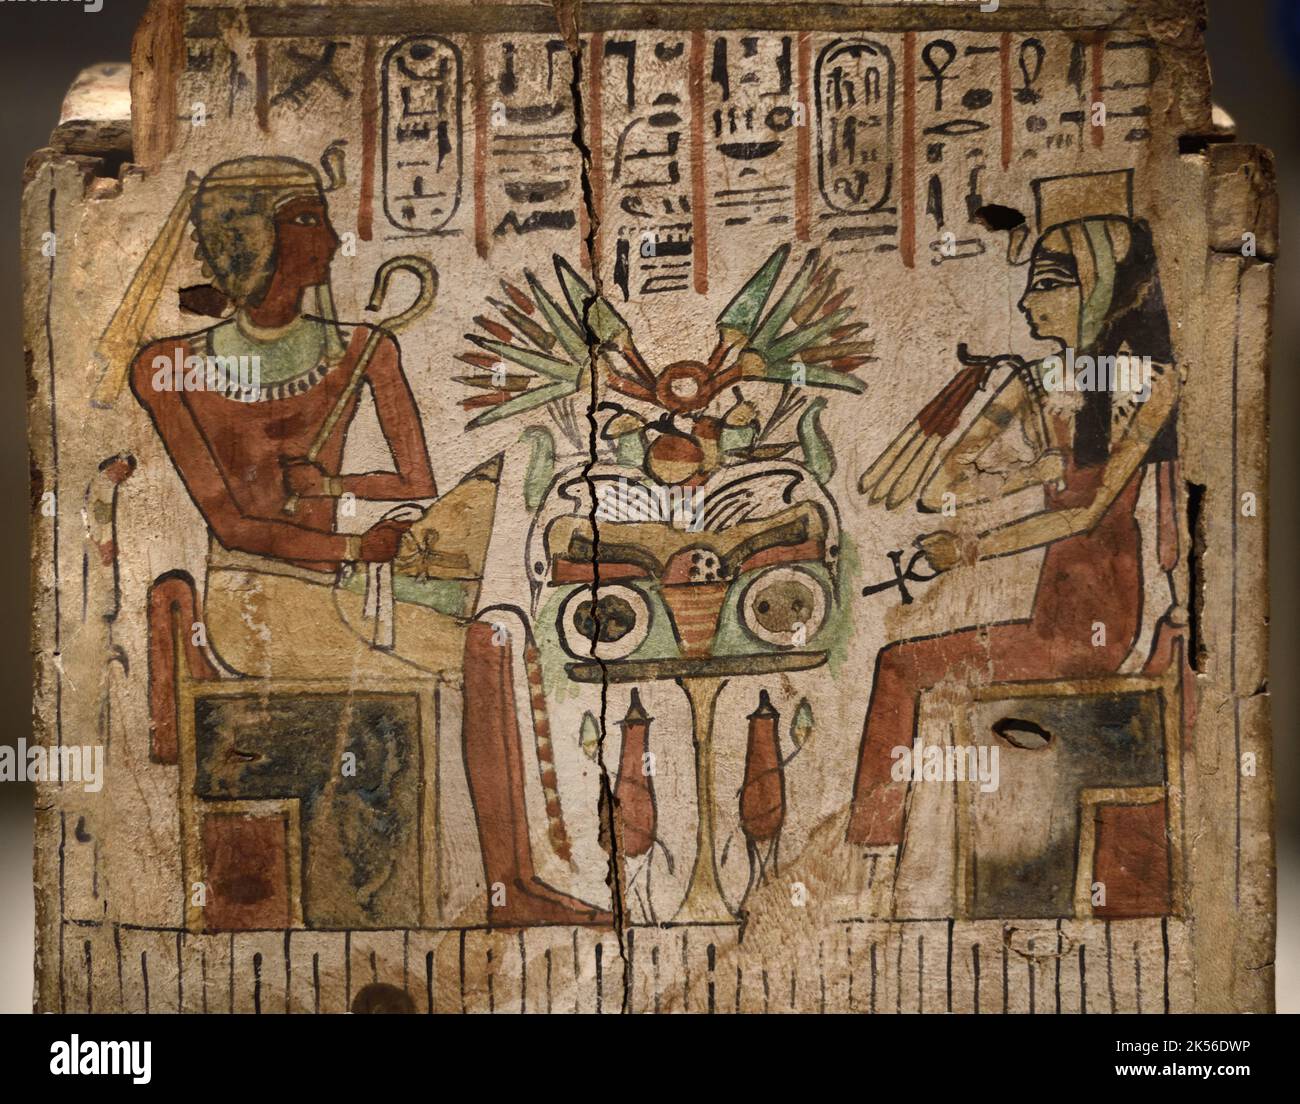 Cercueil en bois ou boîte avec illustration du Pharaon Amenhotep 1 et sa mère Reine Ahmose Nefertary c Täleu-8thAD Égypte ancienne Banque D'Images